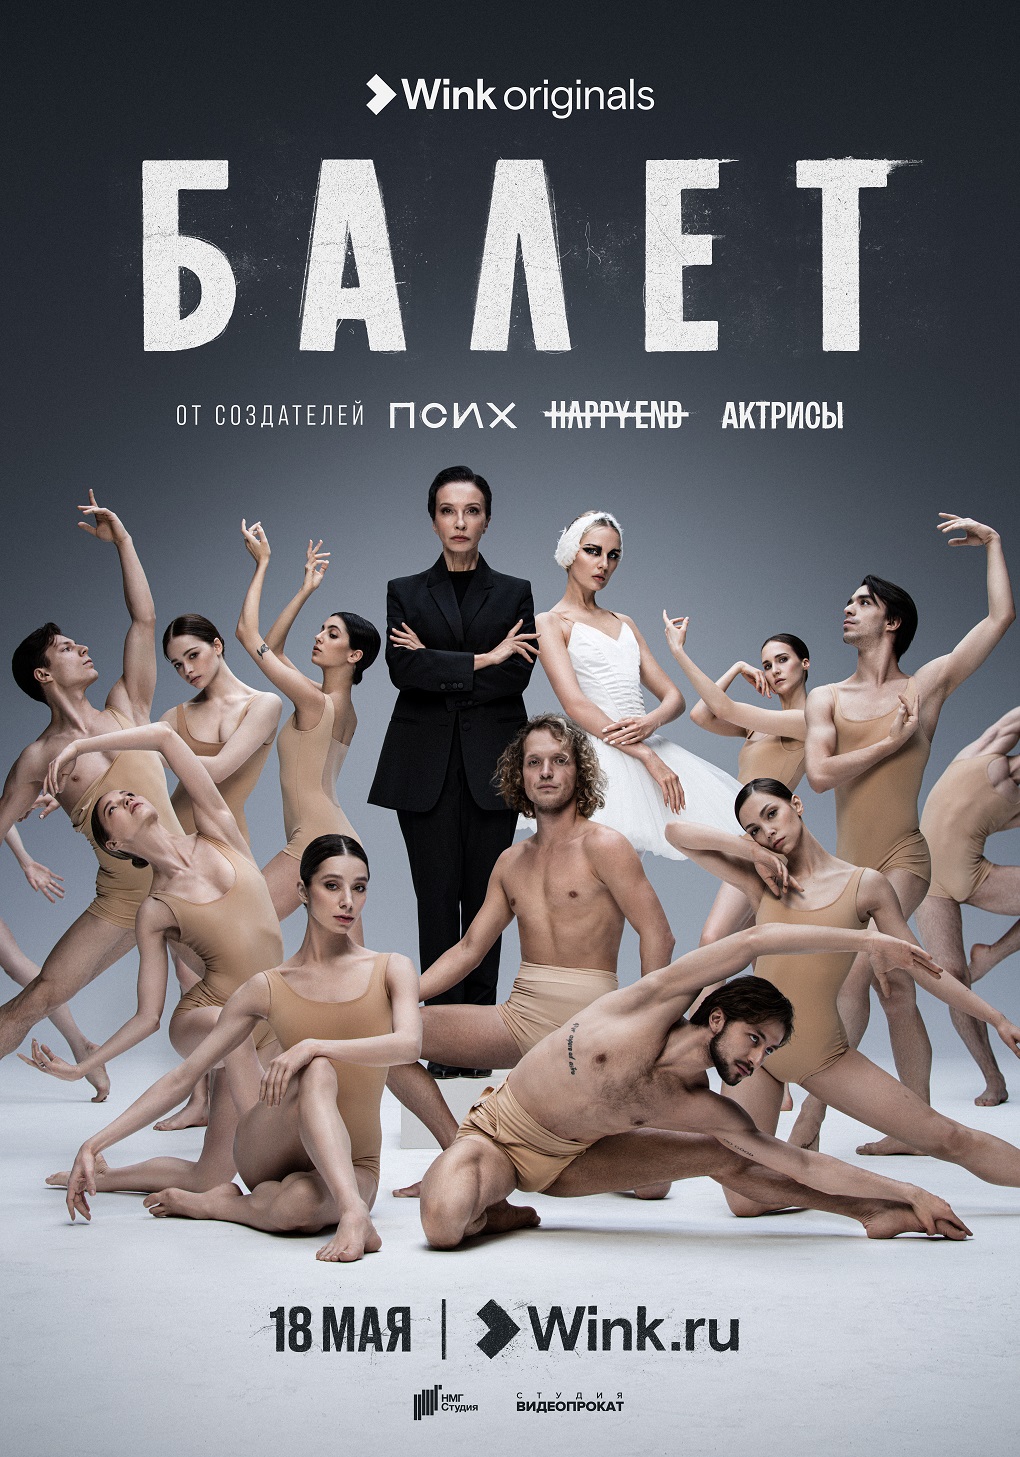 Прикоснуться к искусству: новый сериал станет путеводителем в мир балета 